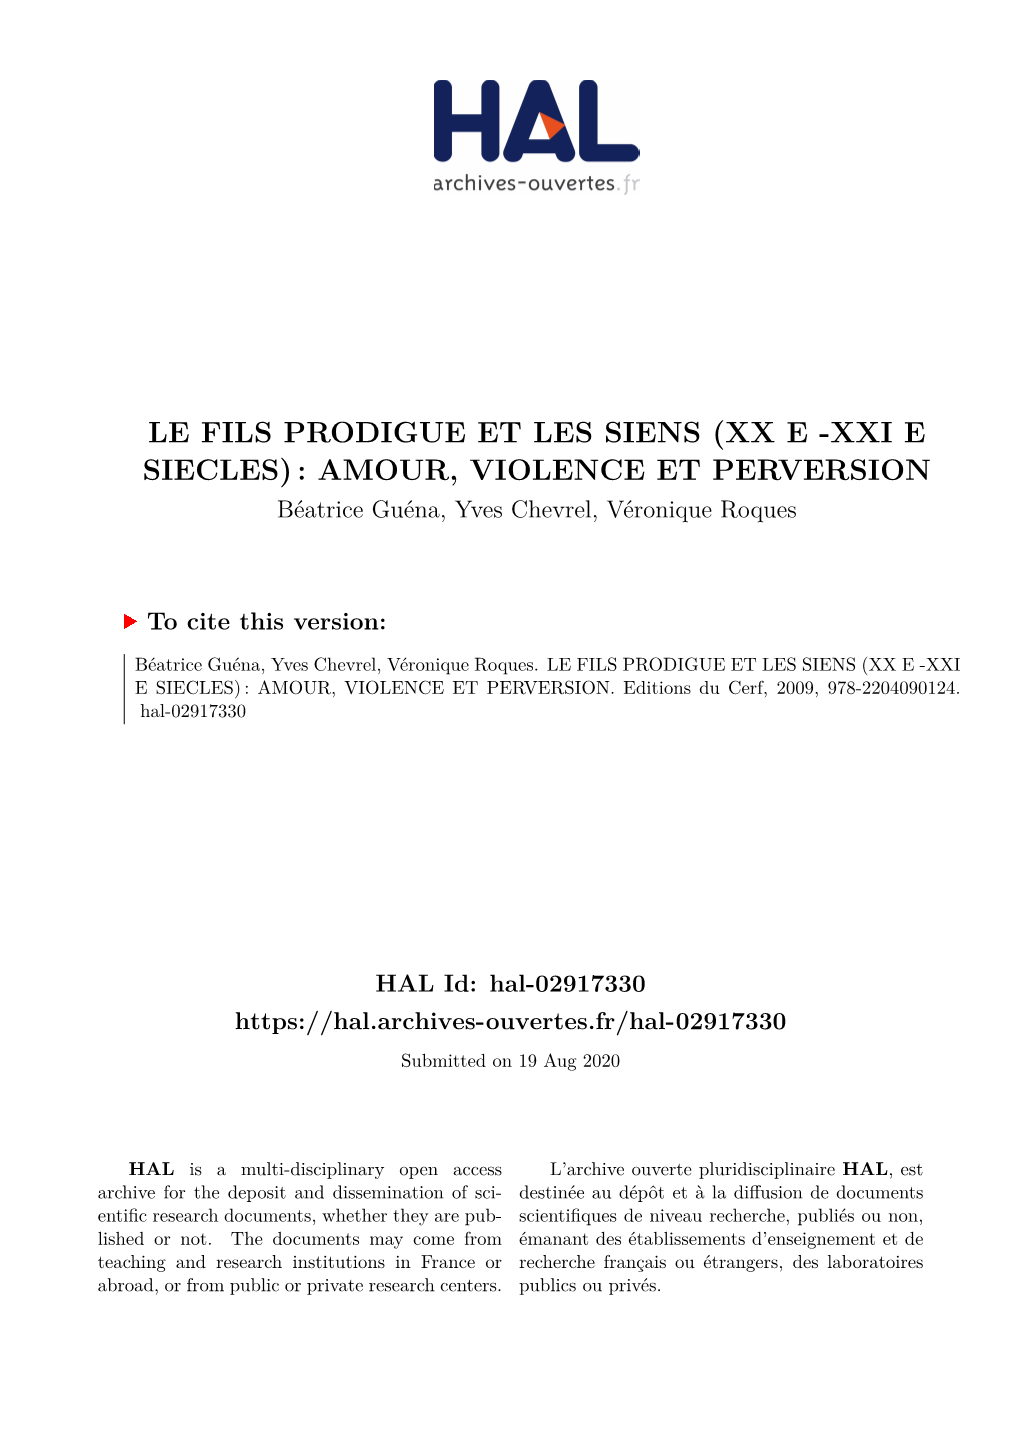 Fils Prodigue Version HAL.Pdf